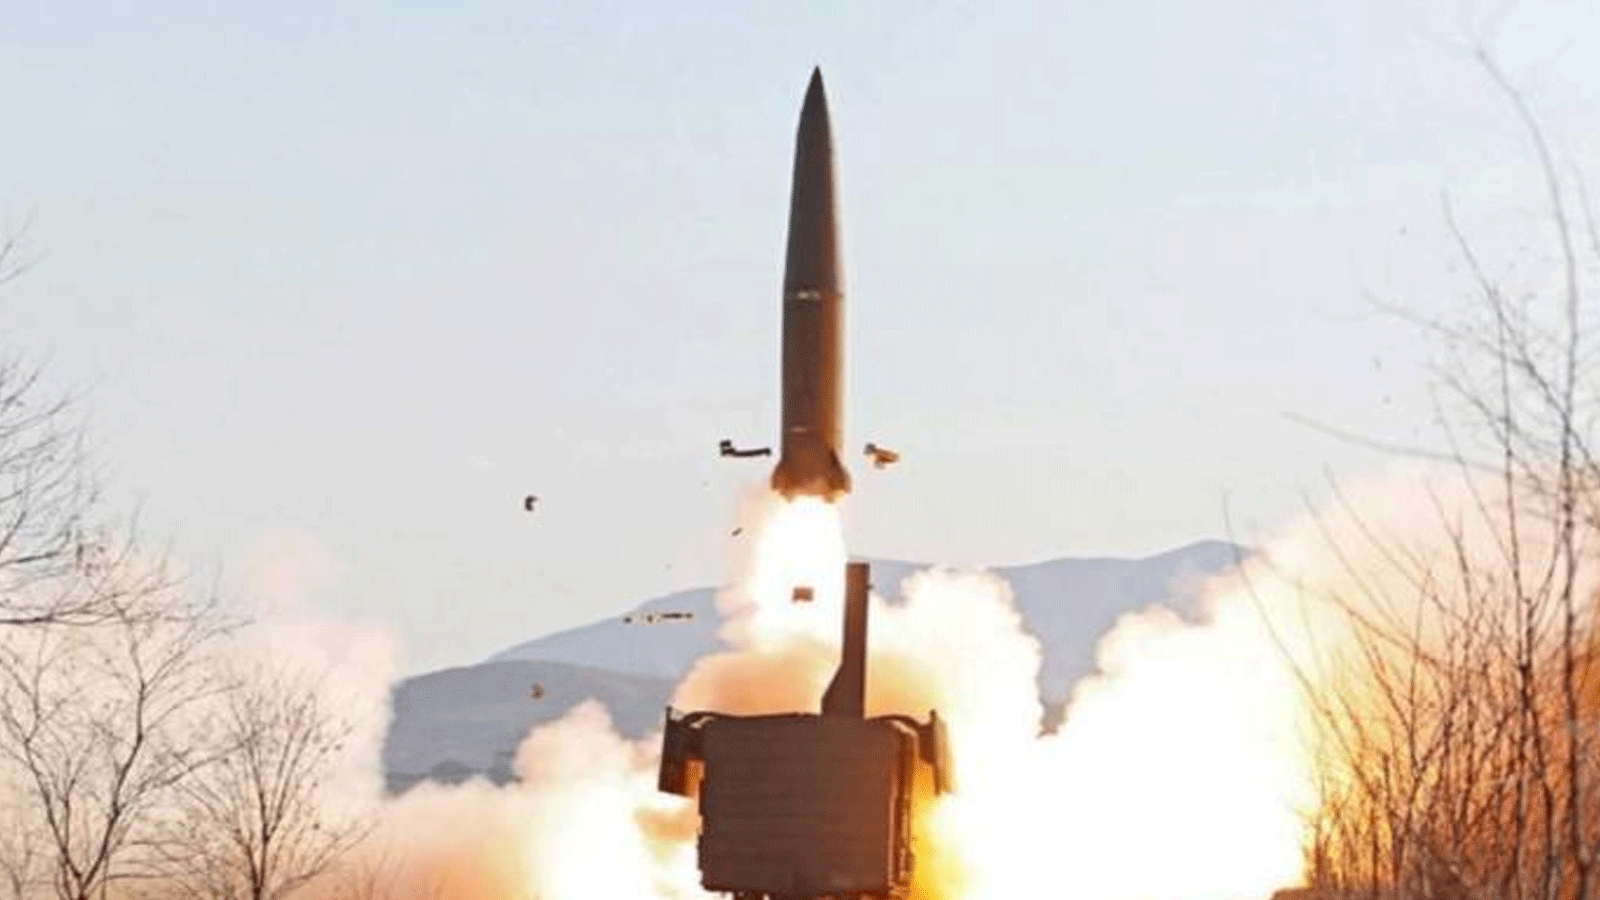 سيول وواشنطن تطلقان صواريخ بالستية رداً على بيونغ يانغ